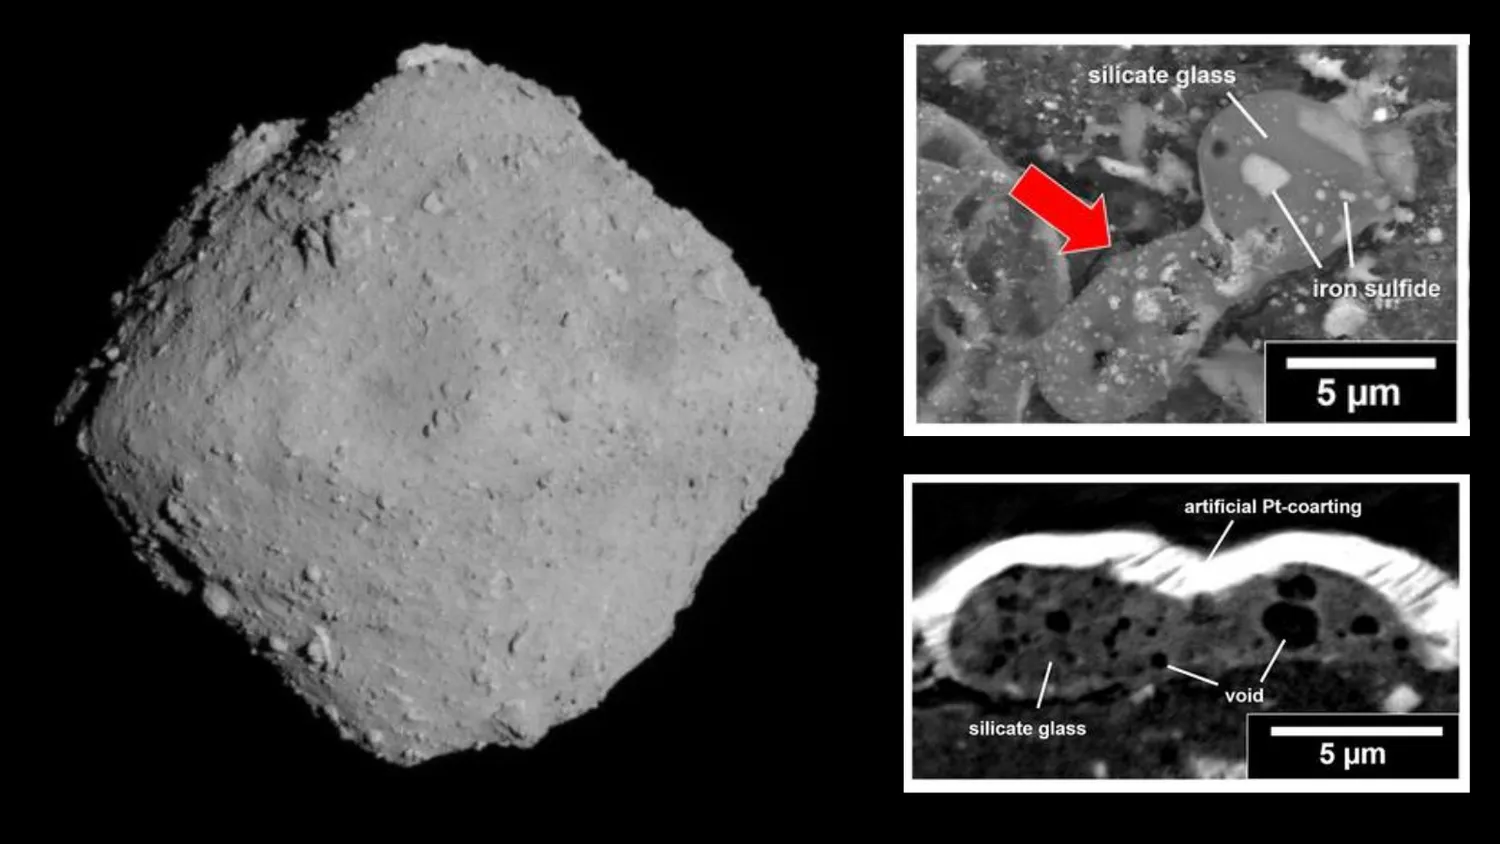 Mehr über den Artikel erfahren Proben des Asteroiden Ryugu deuten darauf hin, dass es auf der Erde Leben gibt, weil es Kometen gibt